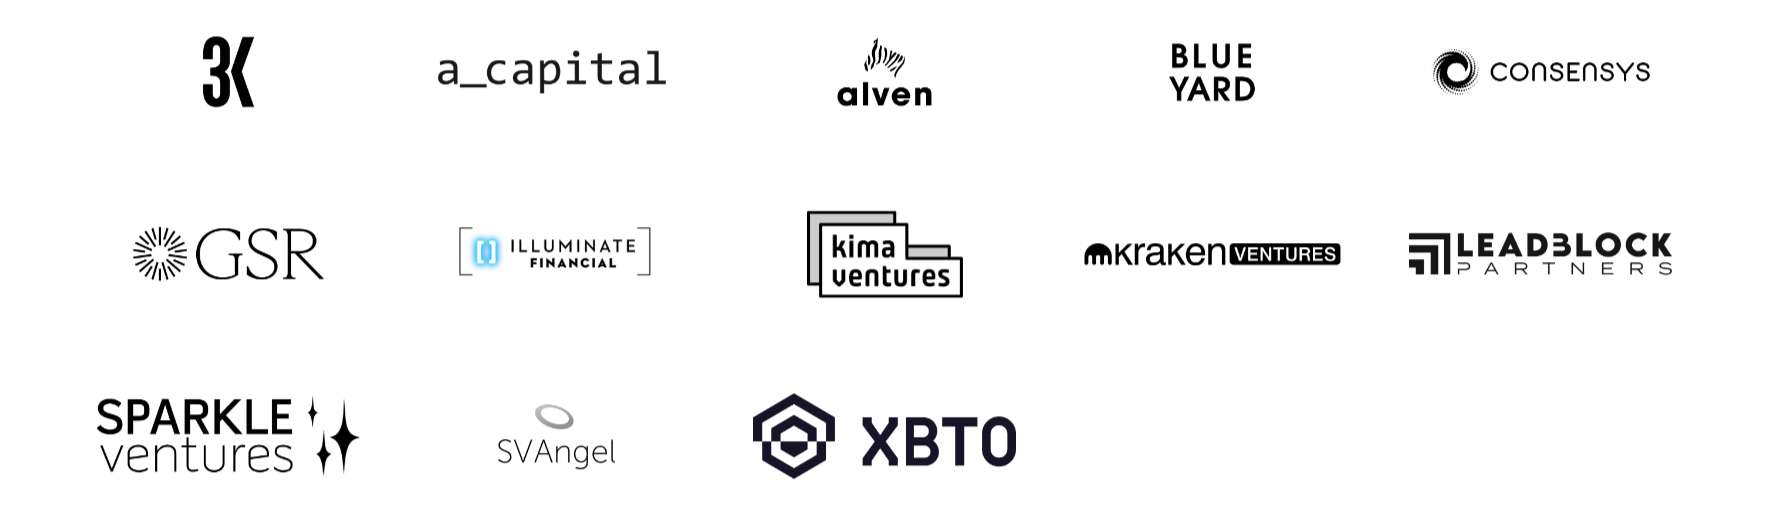 Kiln-investors